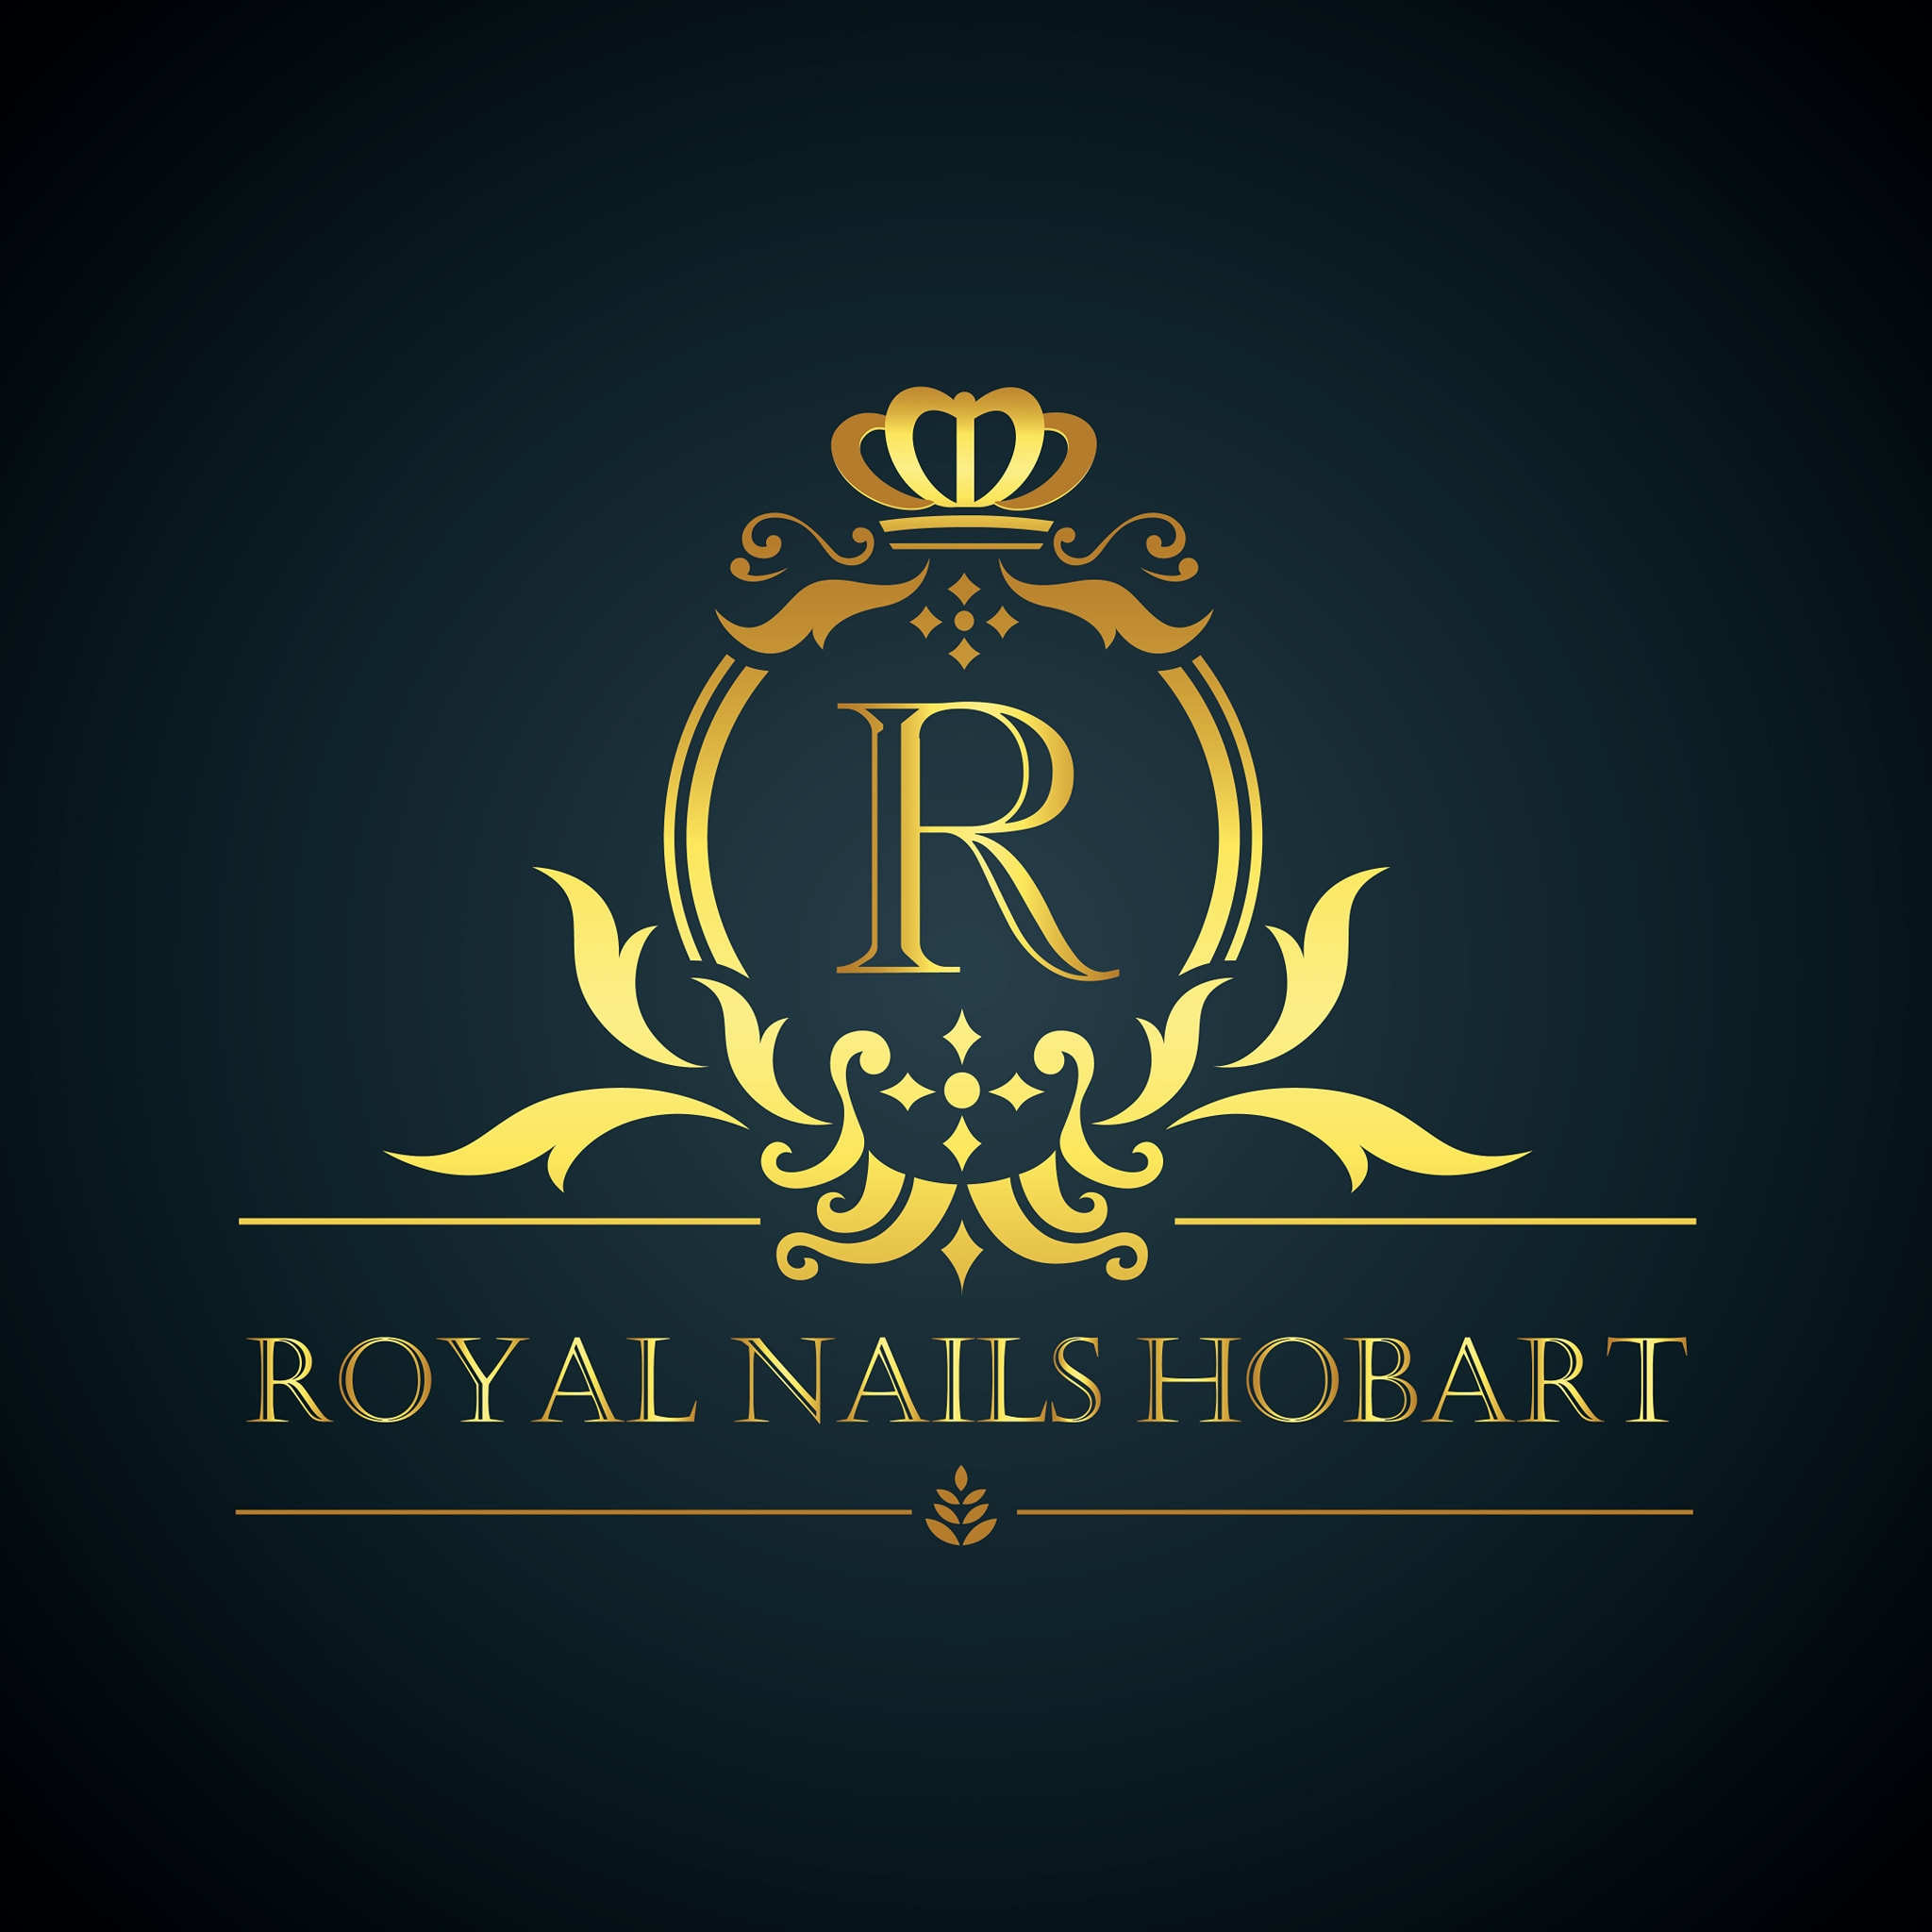 Royal Nails Hobart